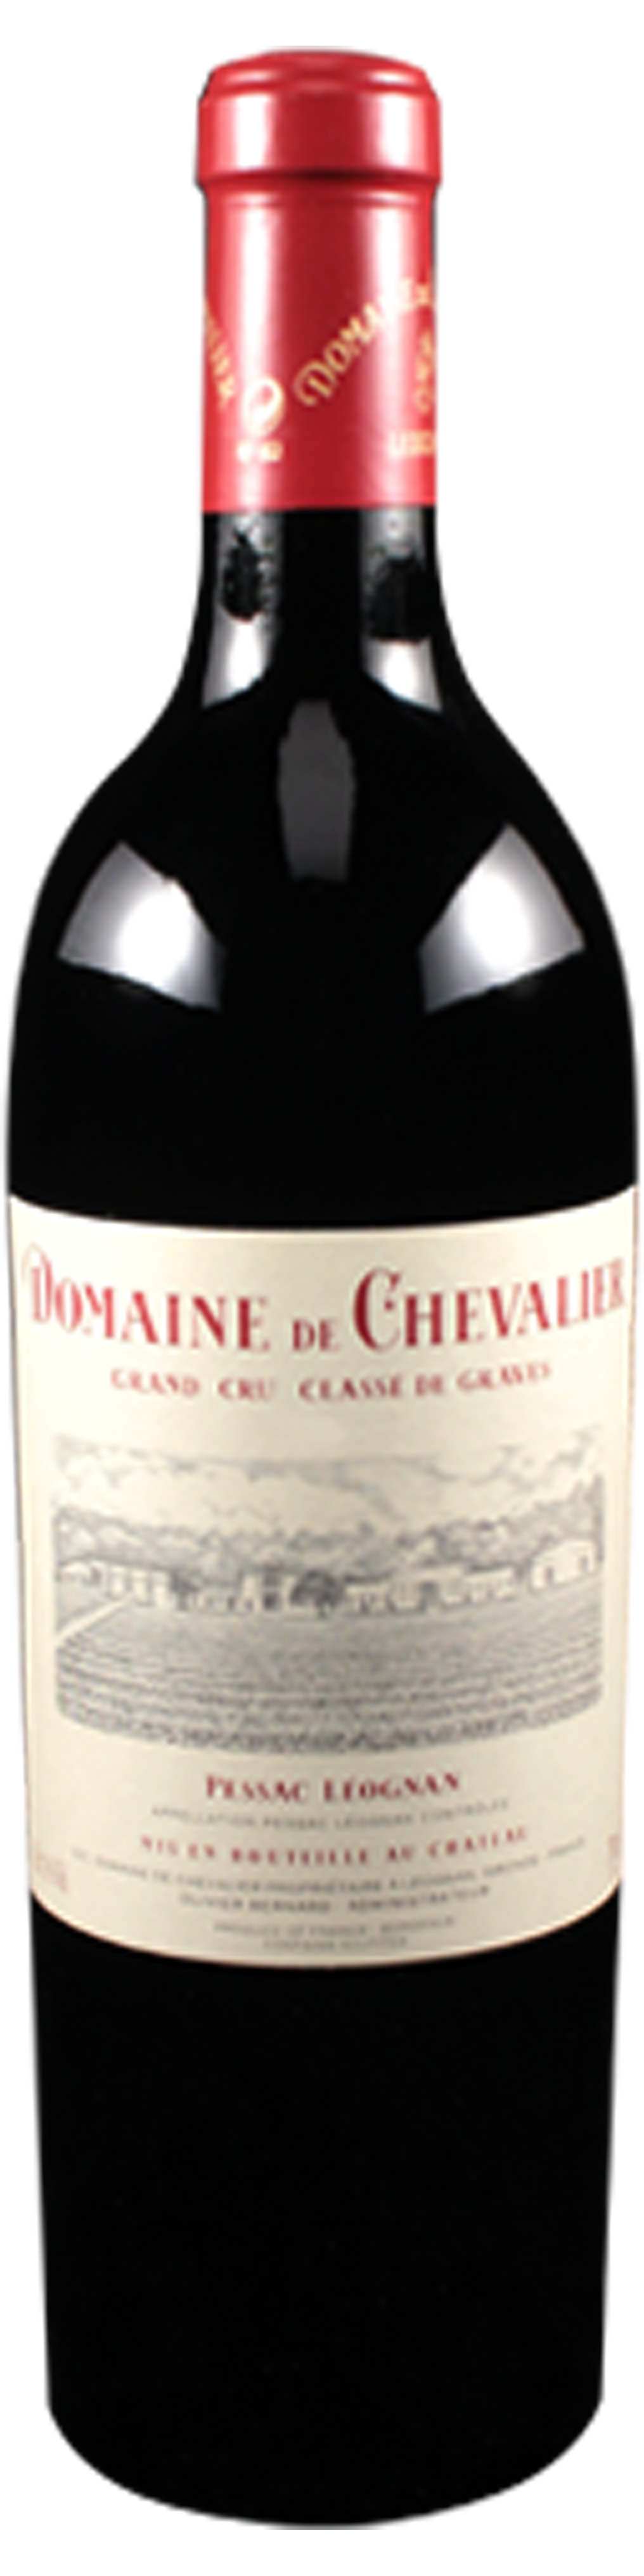 Bottle shot of 2009 Domaine de Chevalier Rouge, Cru Classé Graves